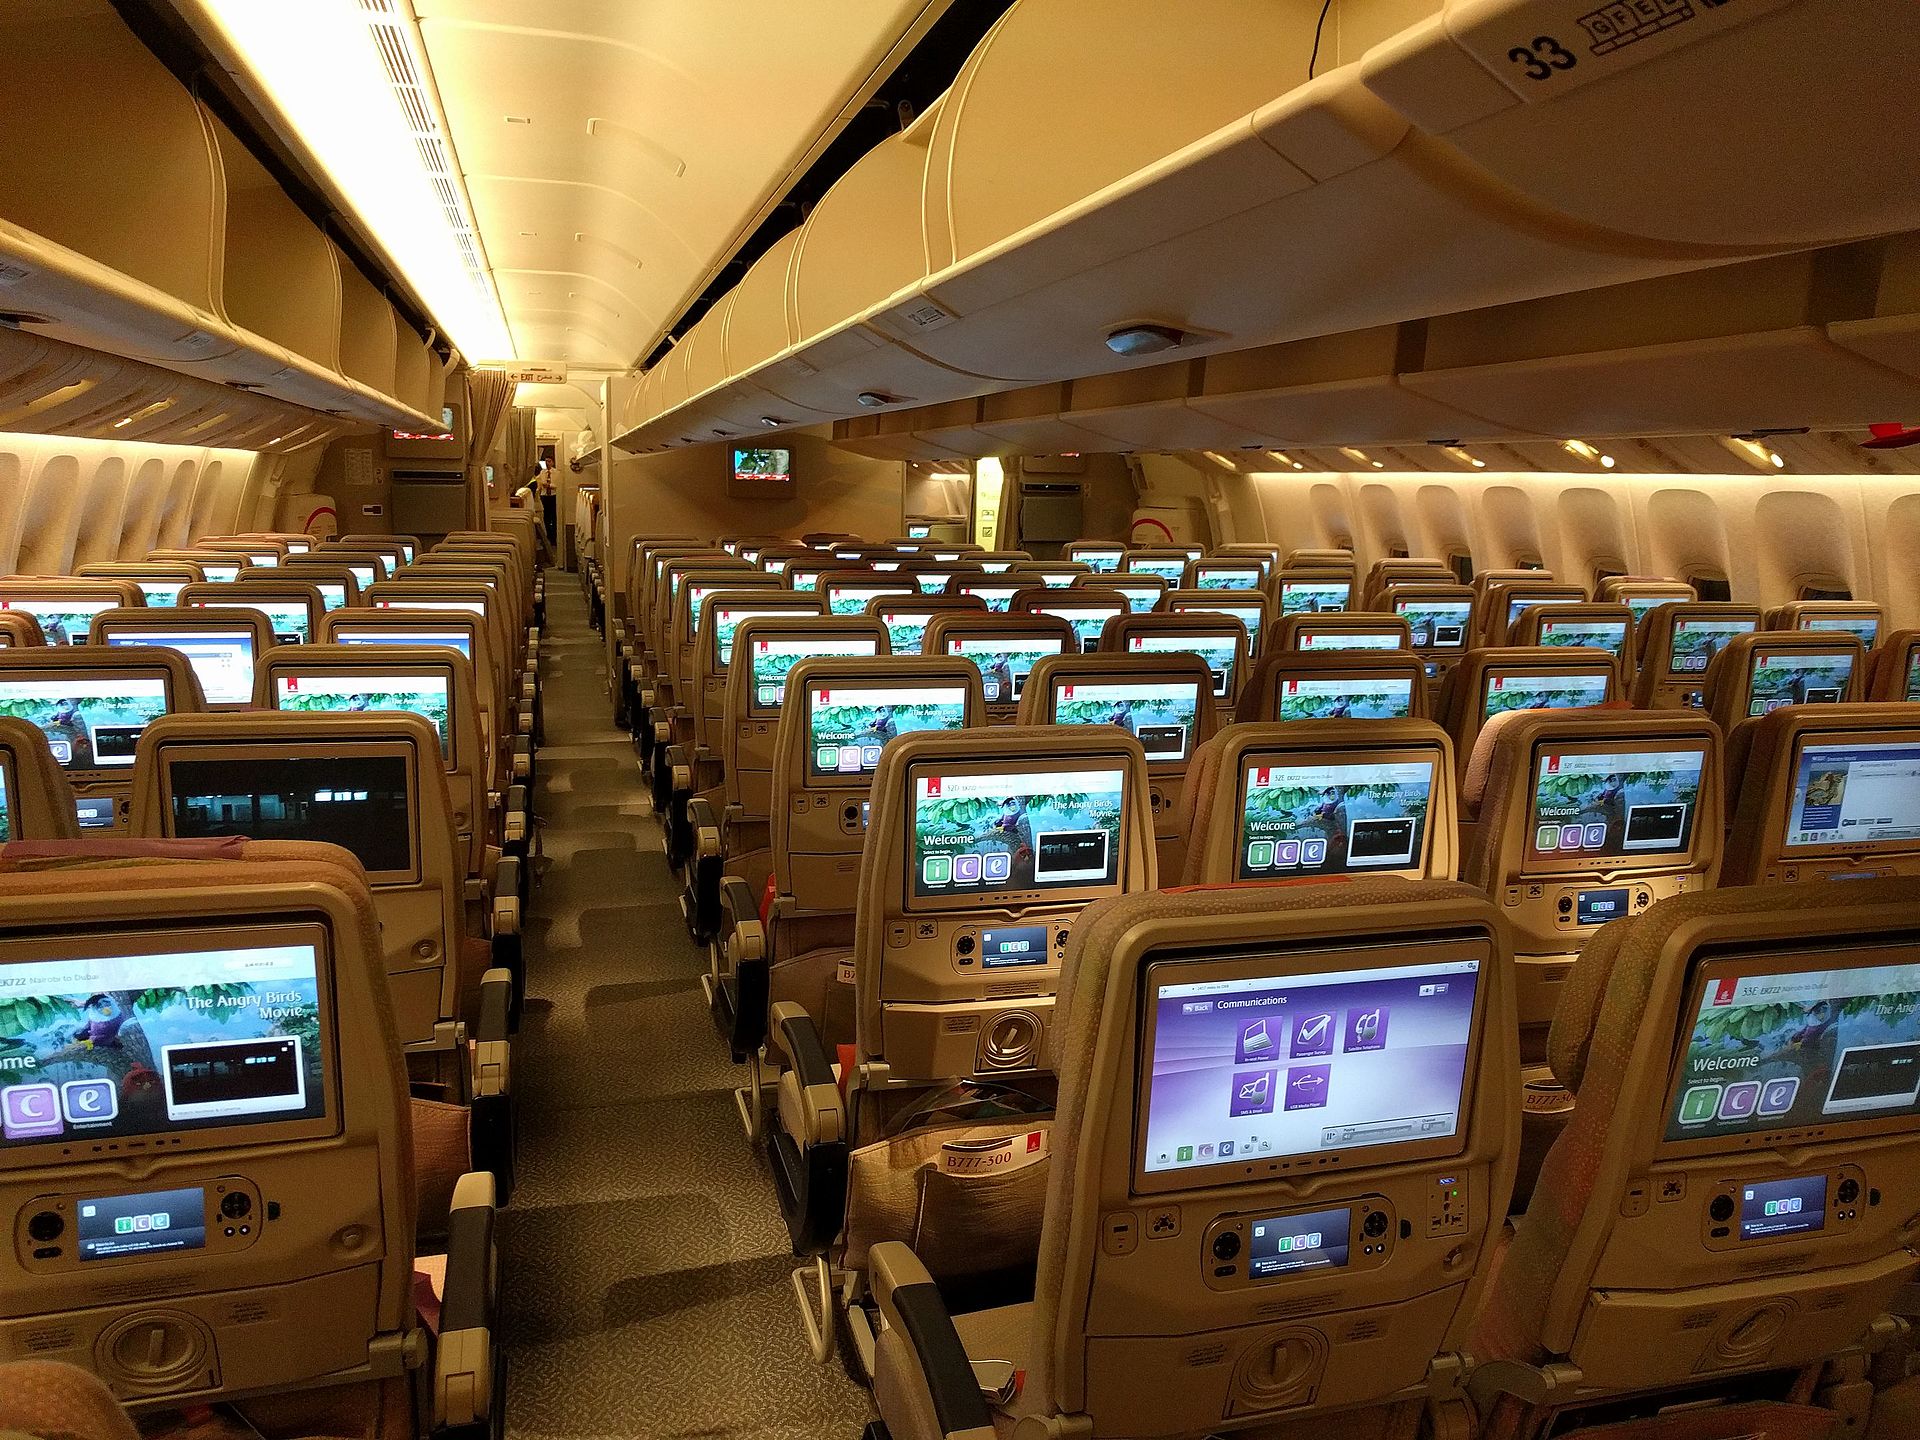 Emirates 777 Economy